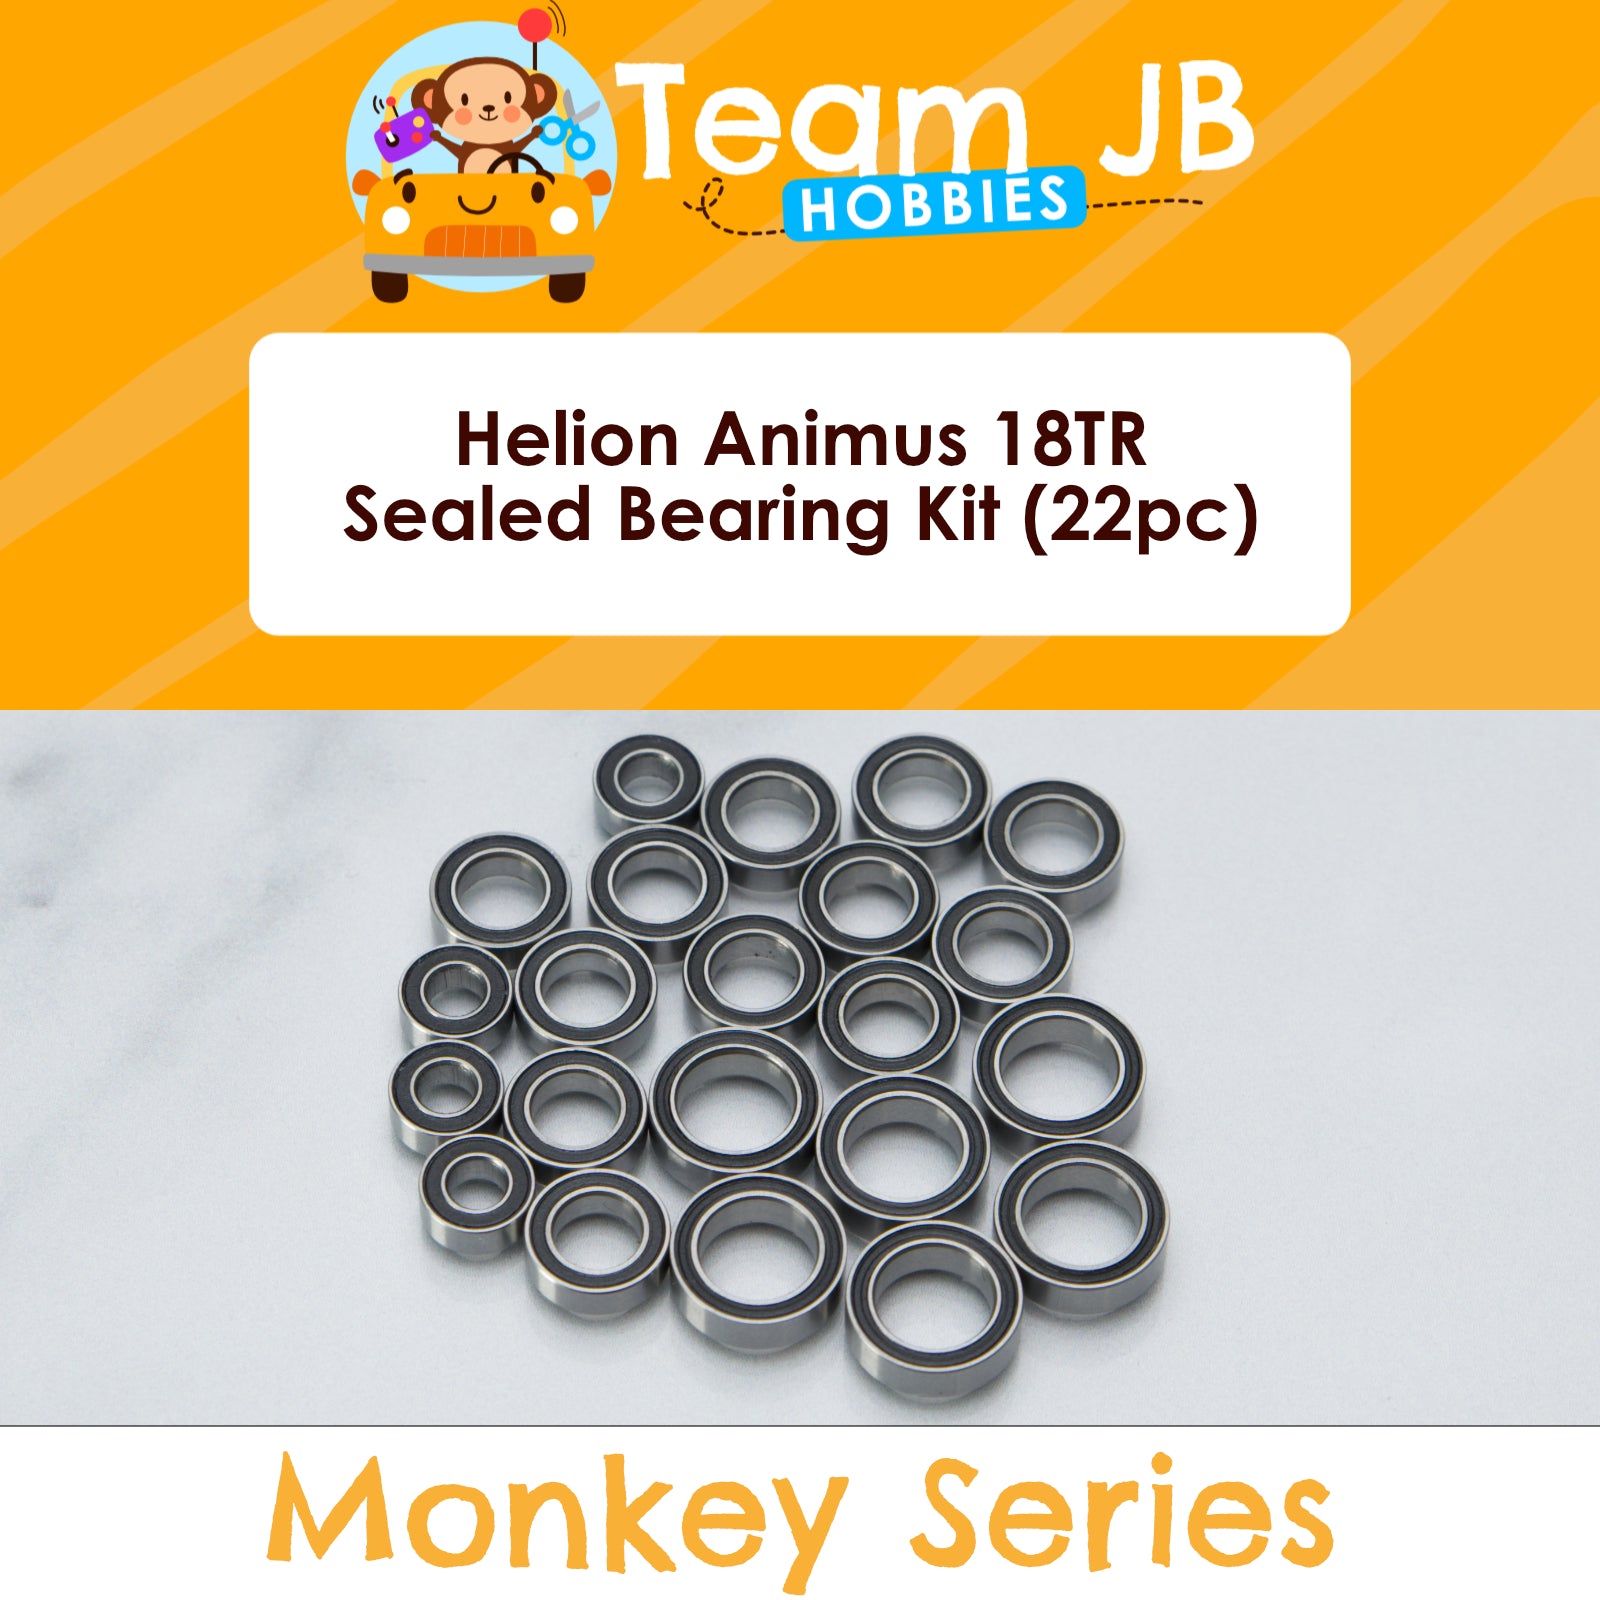 Helion Animus 18TR - Sealed Bearing Kit